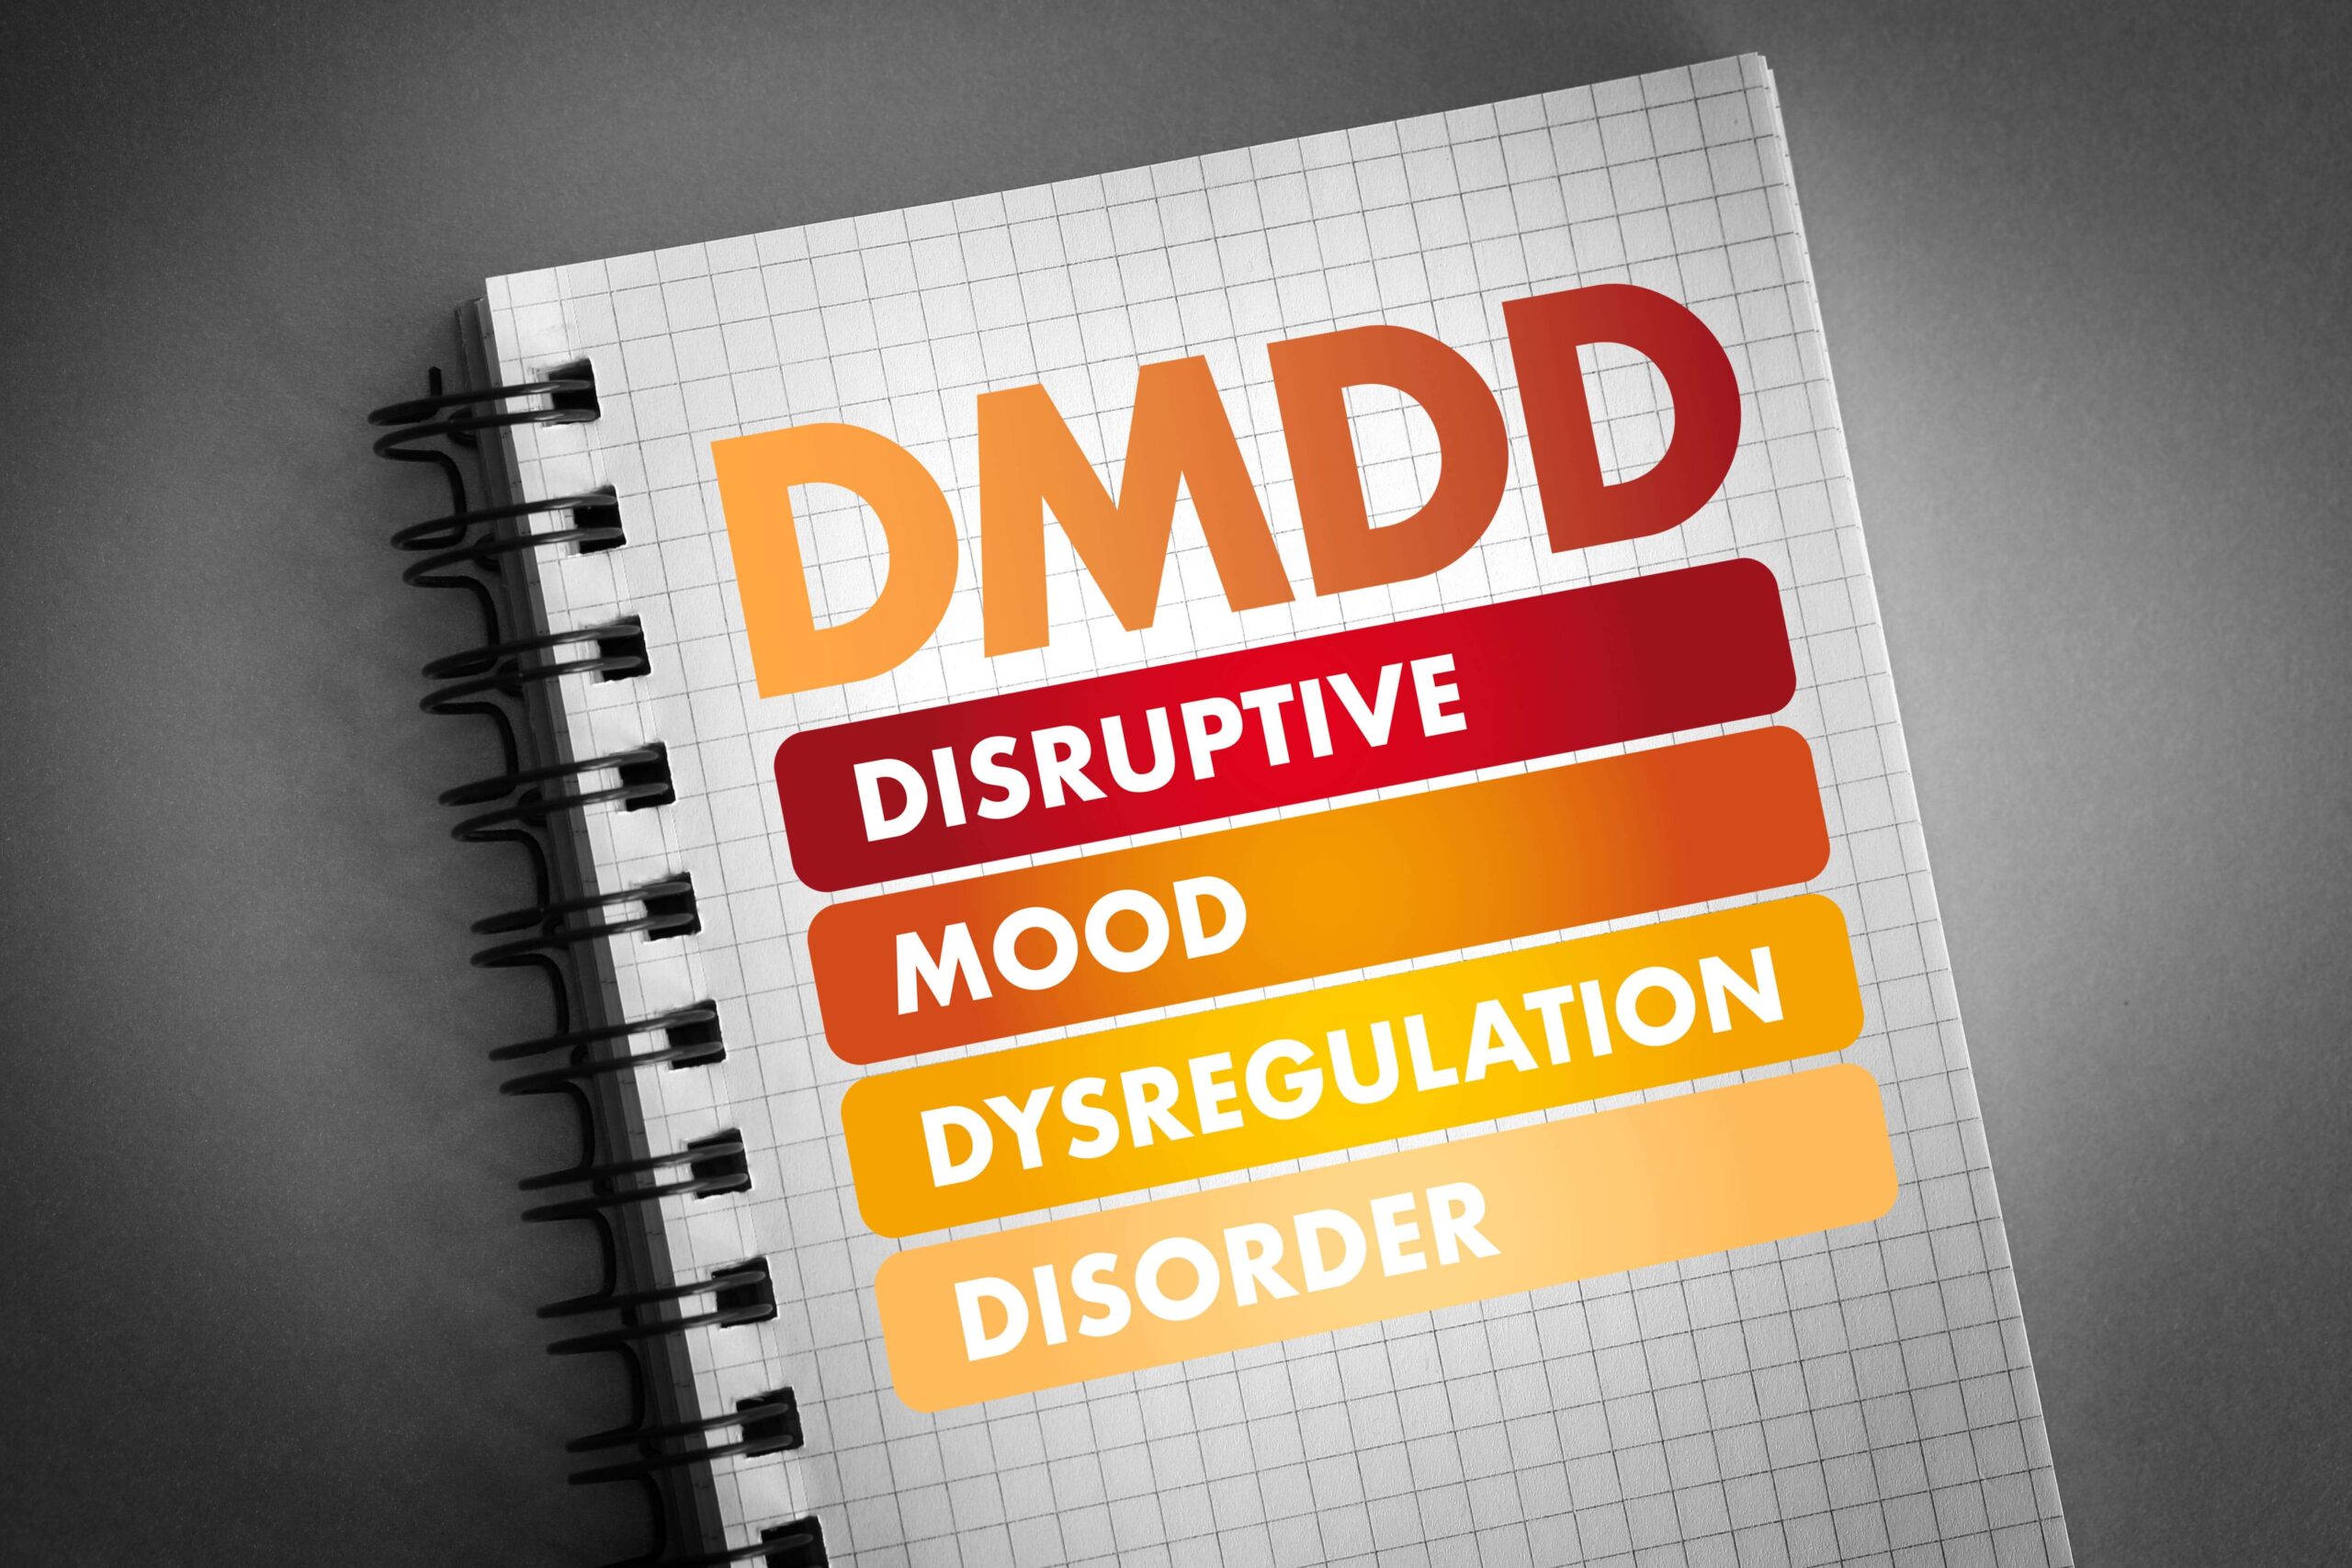 disruptive mood dysregulation disorder dmdd written on a notebook